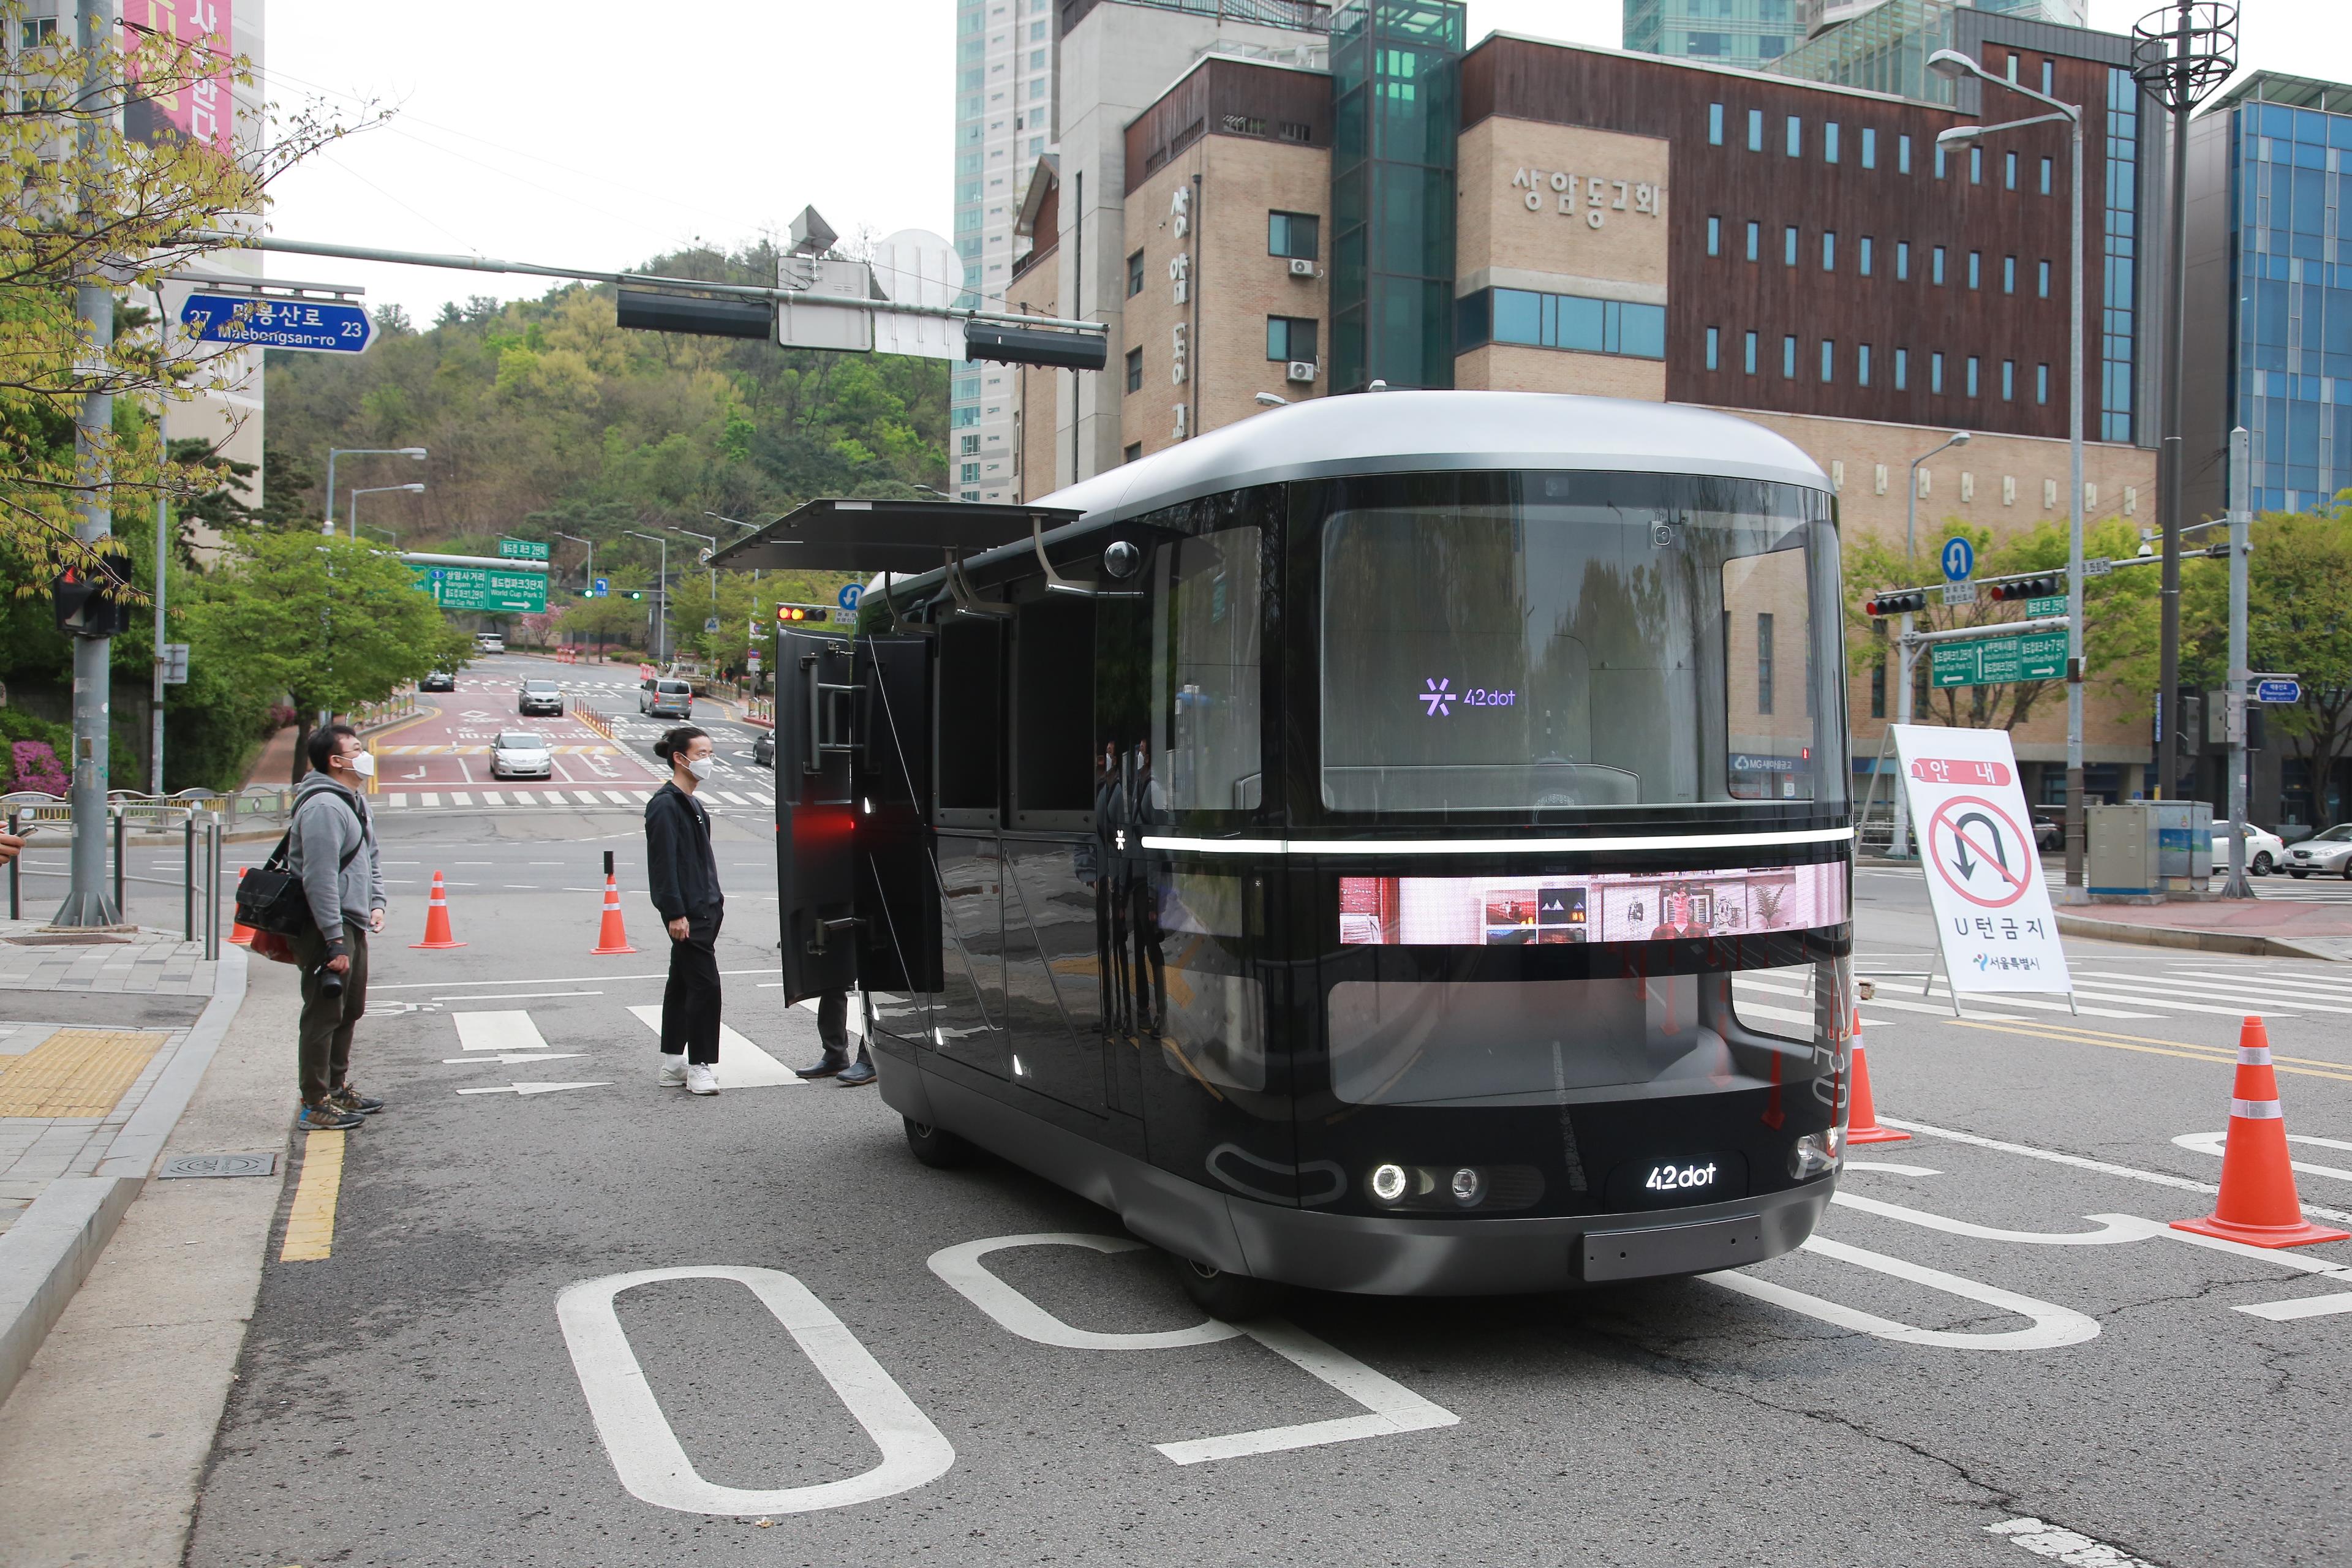 이르면 10월부터 서울 마포구 상암 일대에서 일반 도로를 달리는 영업용 자율주행차를 볼 수 있다. 사진은 자율주행차의 모습. 서울시 제공